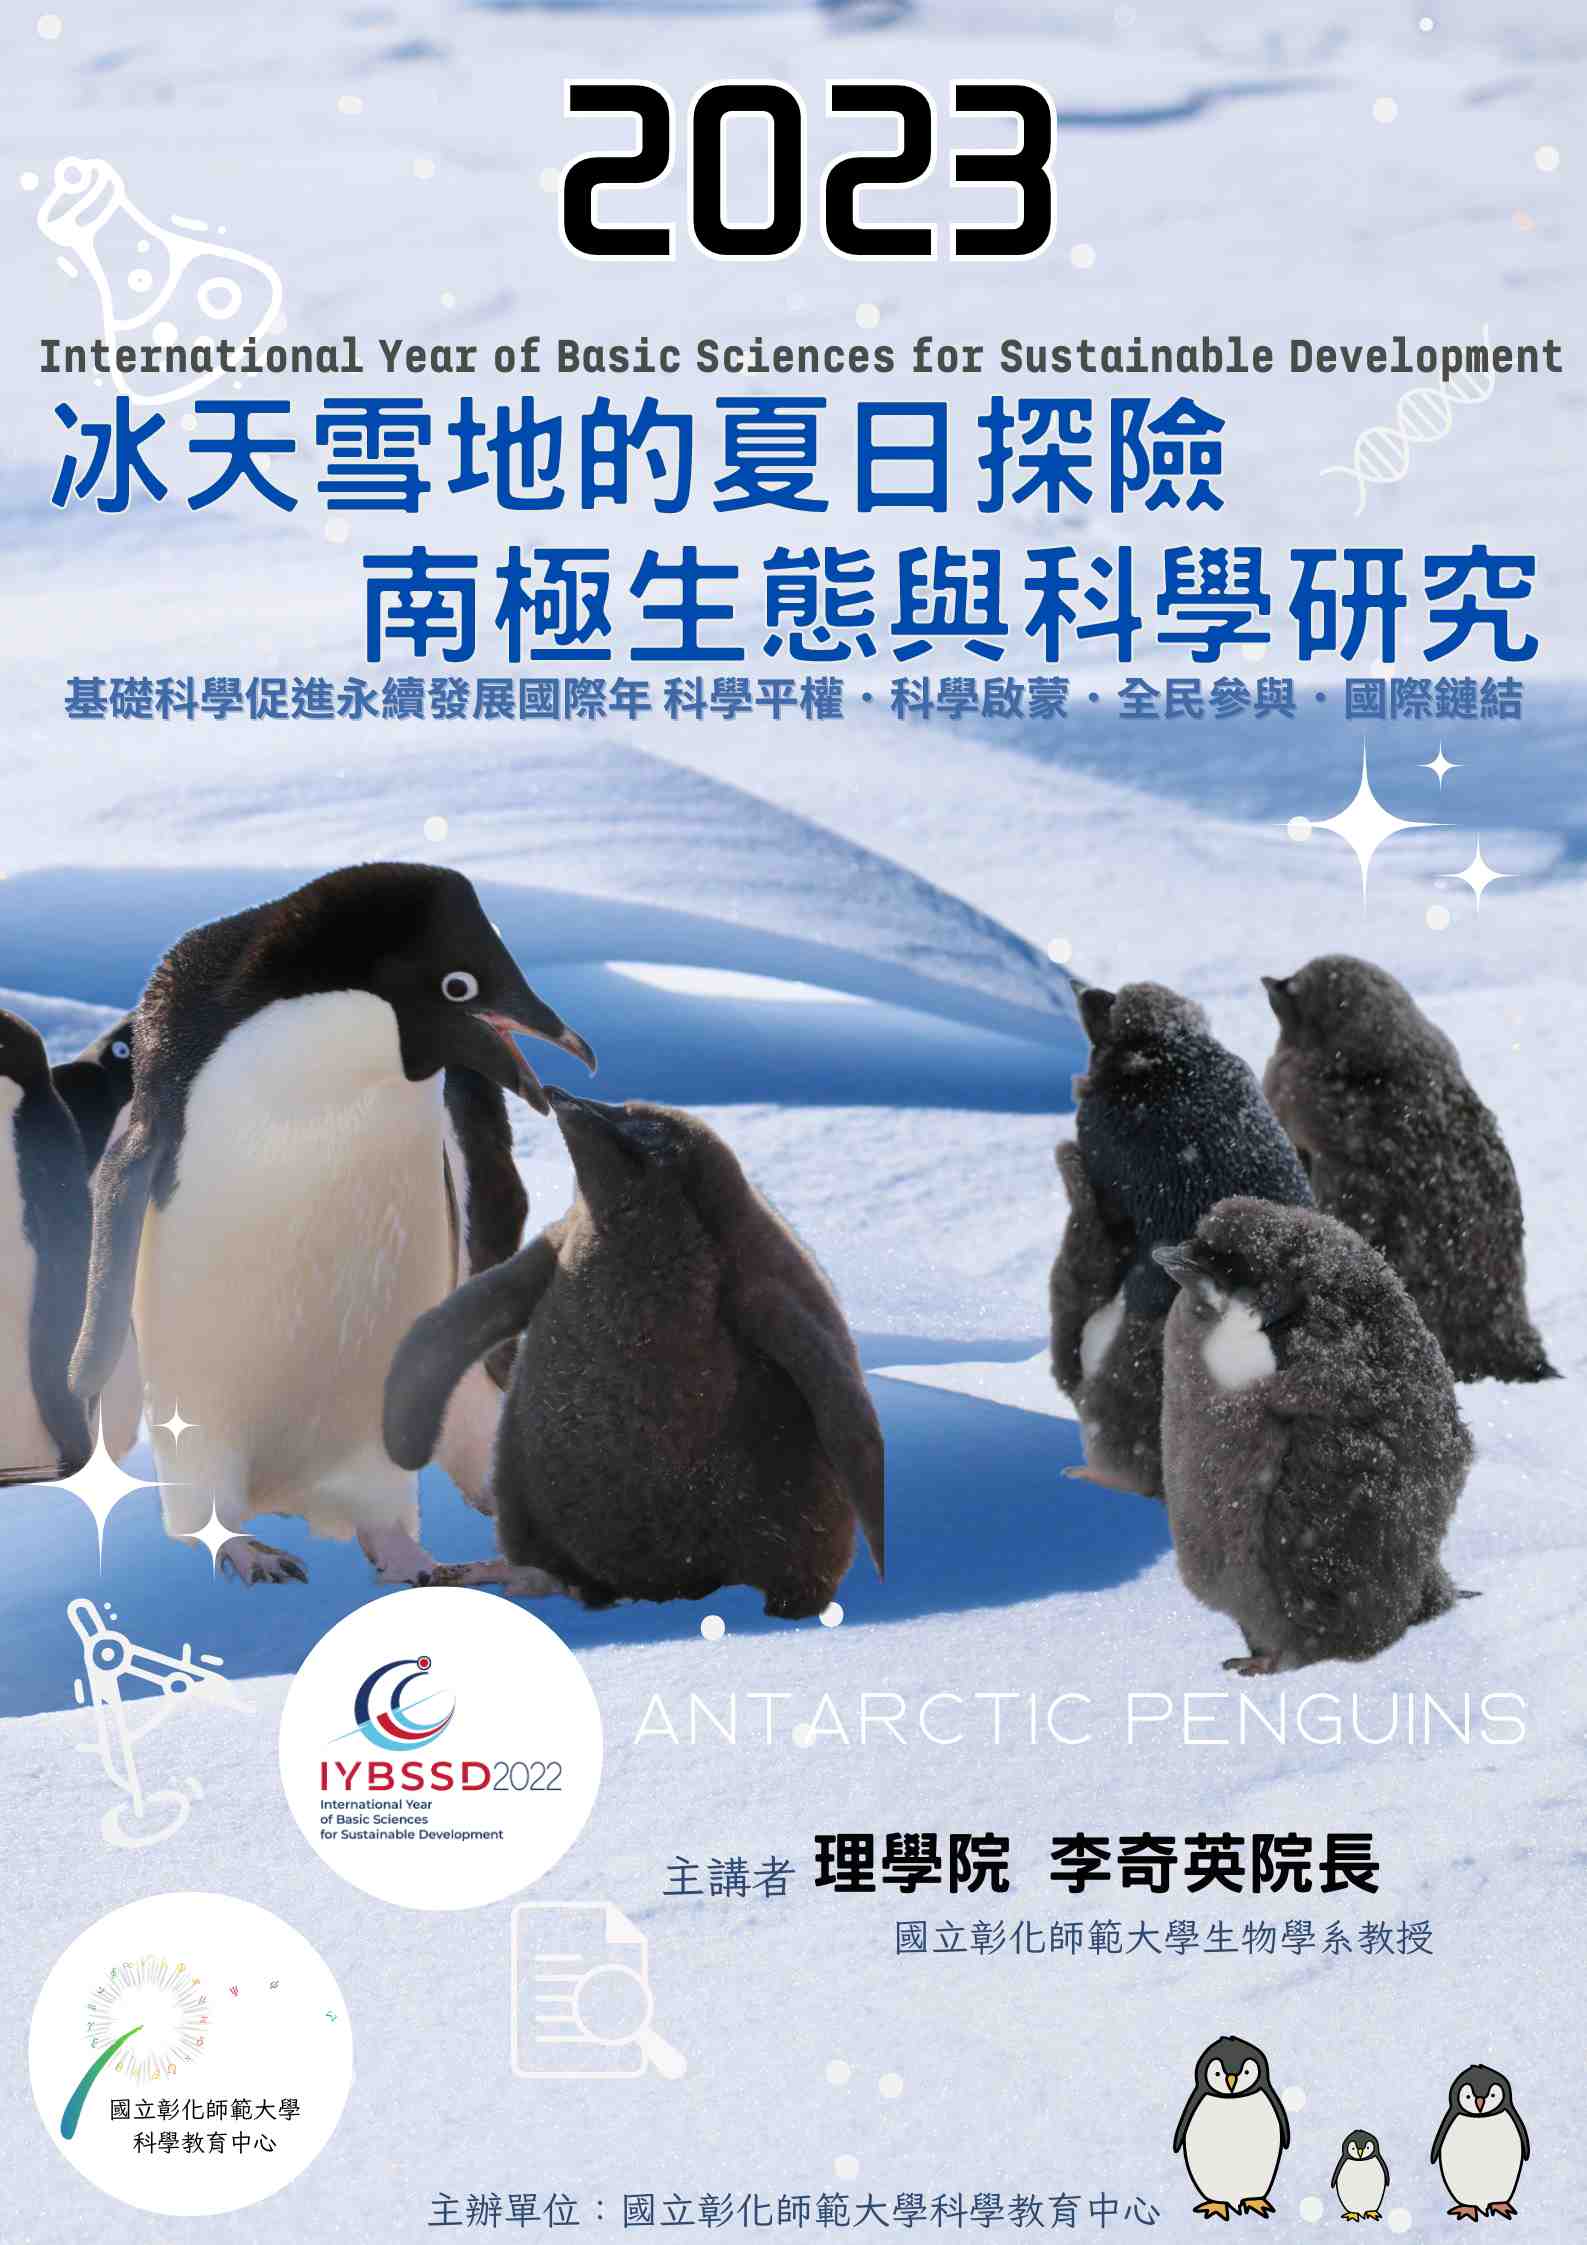 冰天雪地的夏日探險: 南極生態與科學研究宣傳用圖片/海報